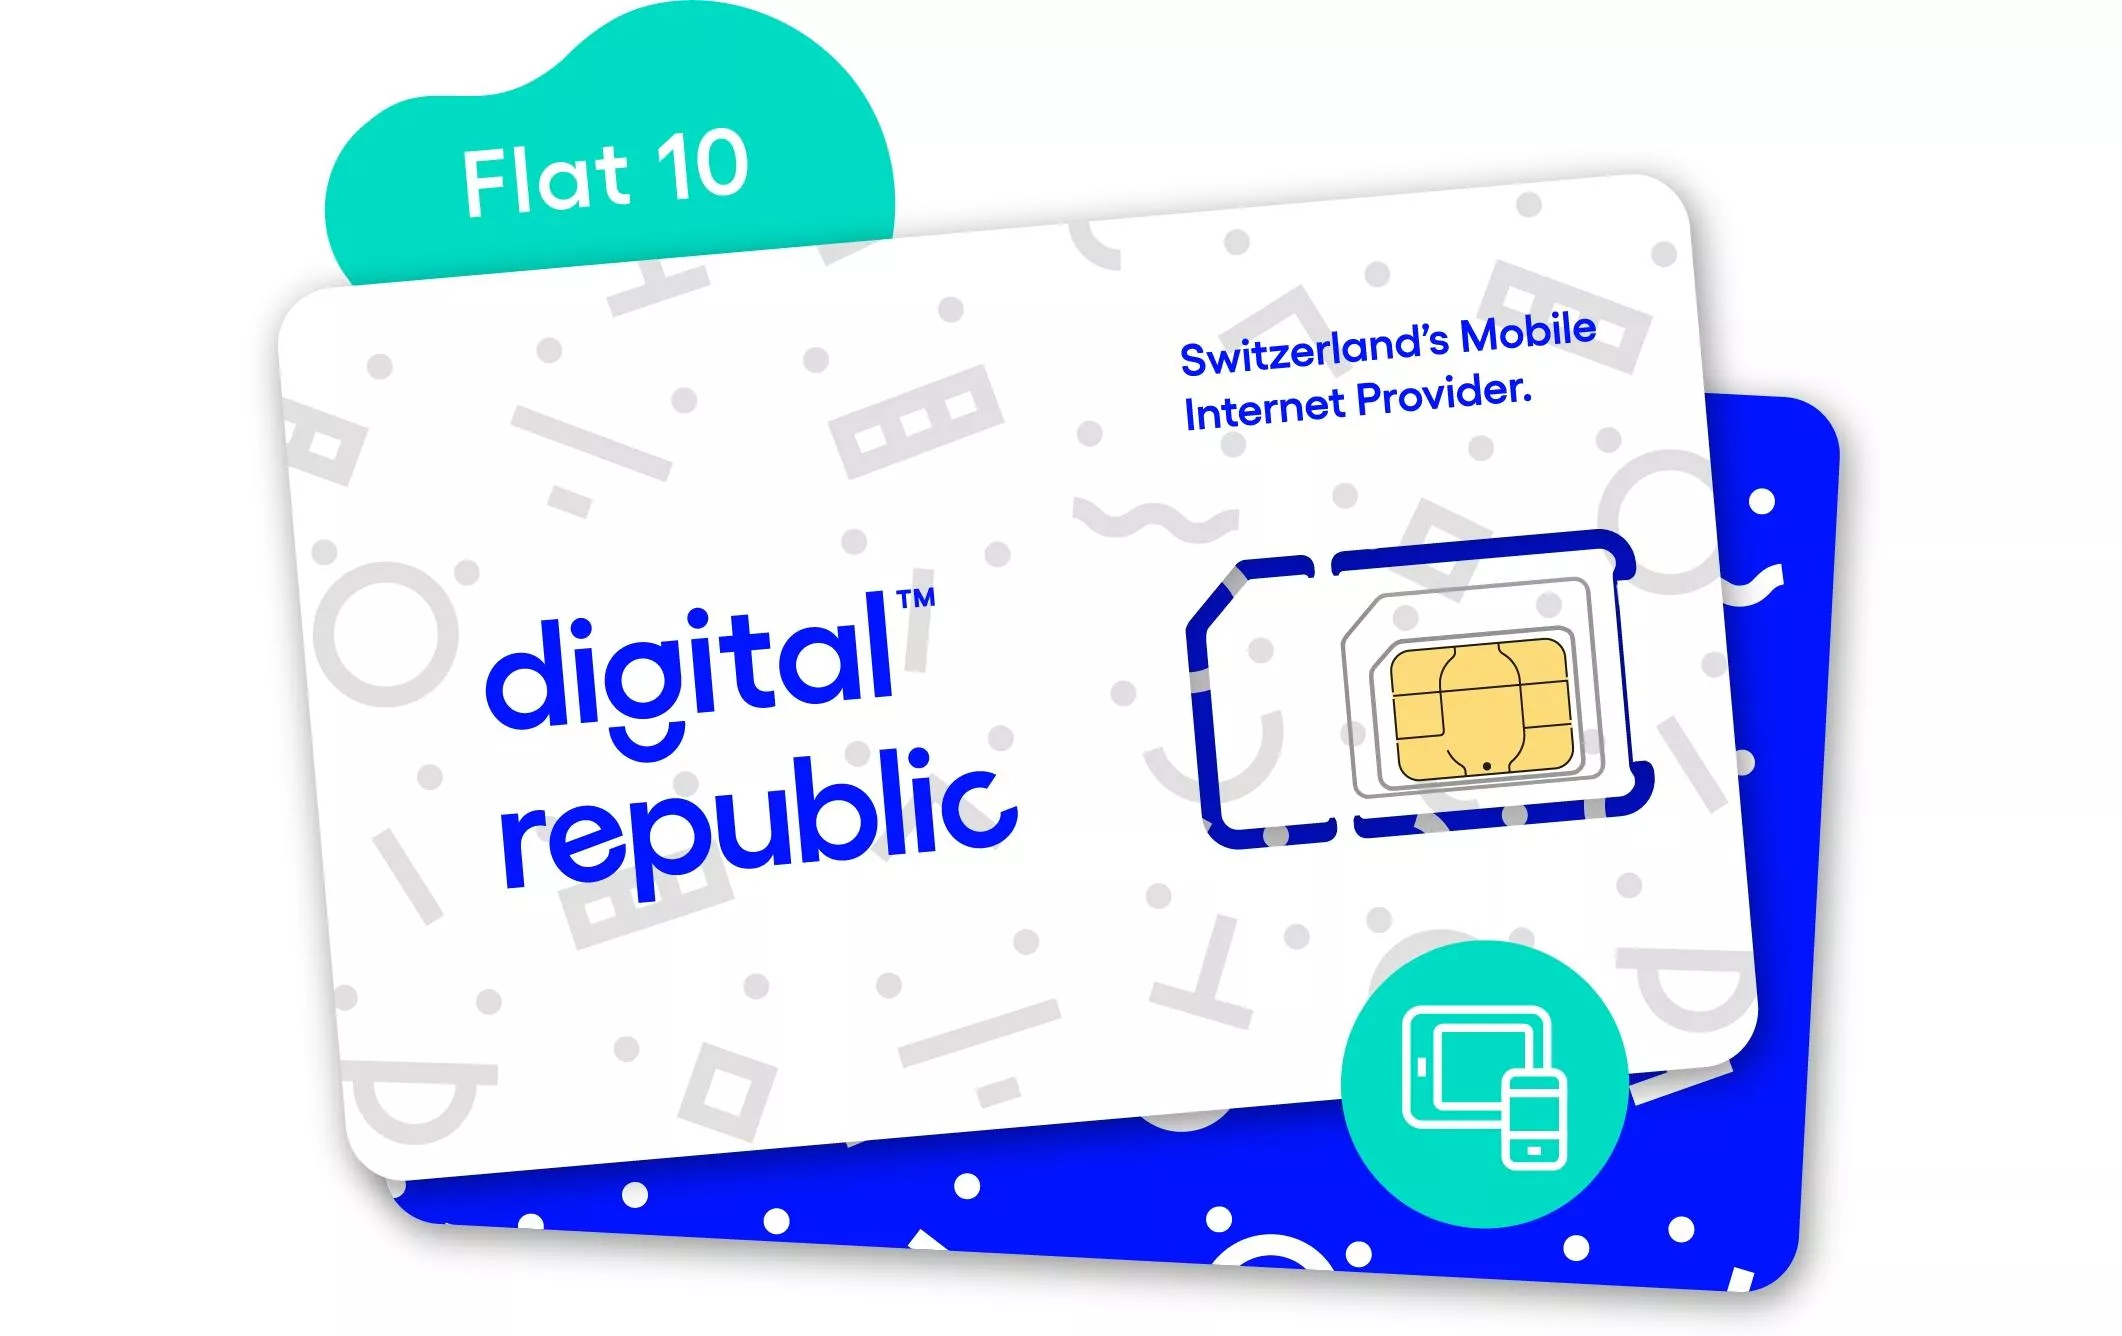 SIM Card Internet illimitato per 30 giorni - Velocità media